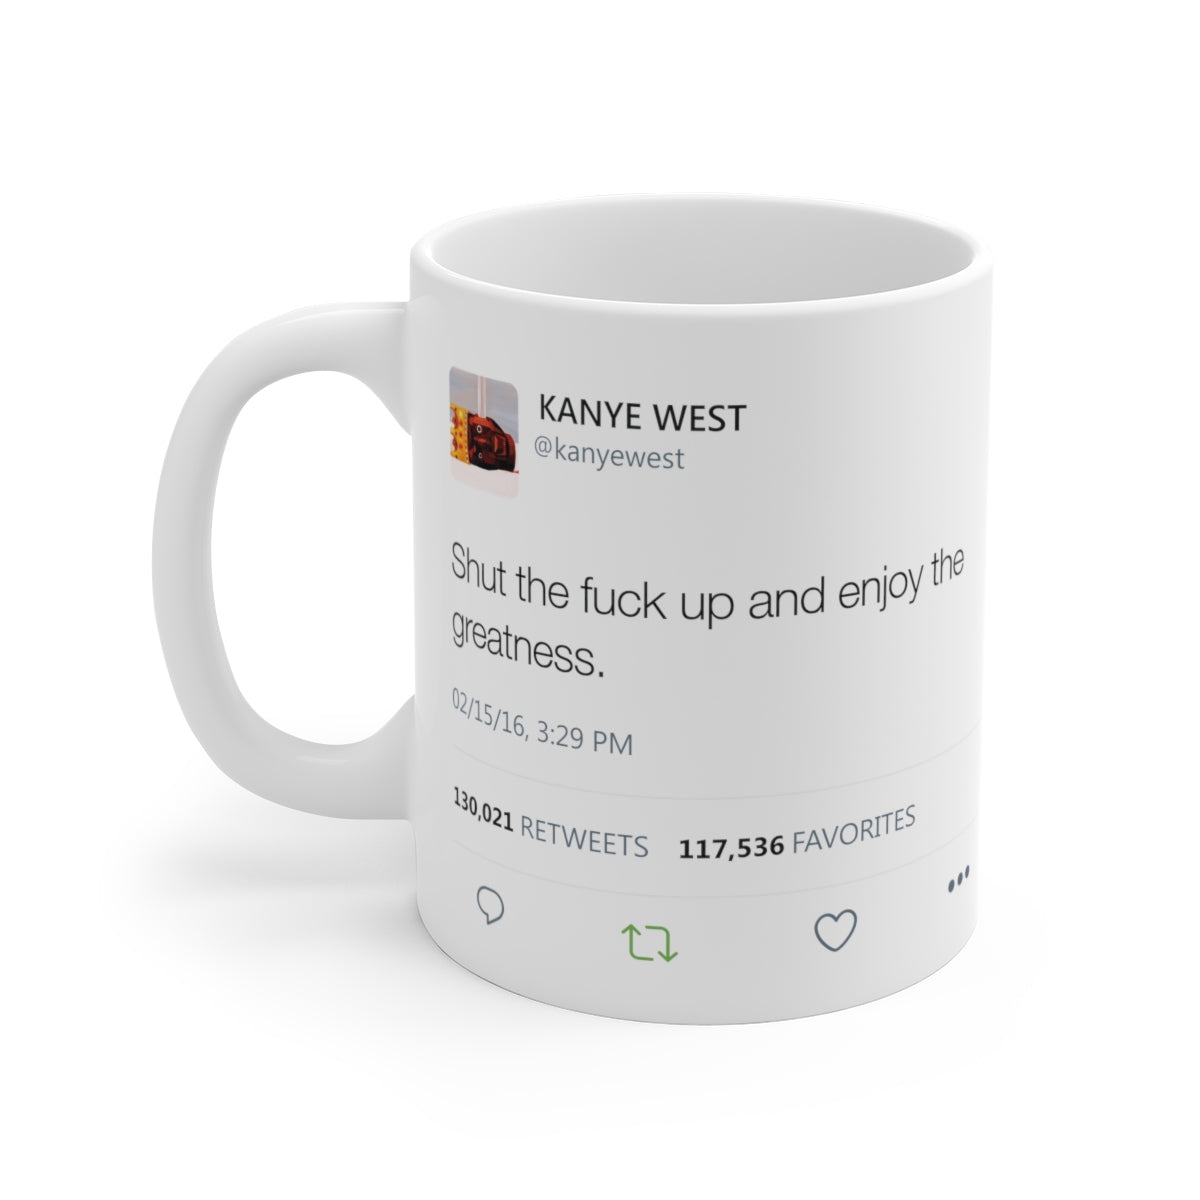 Shut the fuck up and enjoy the greatness Kanye West Tweet Mug-11oz-Archethype